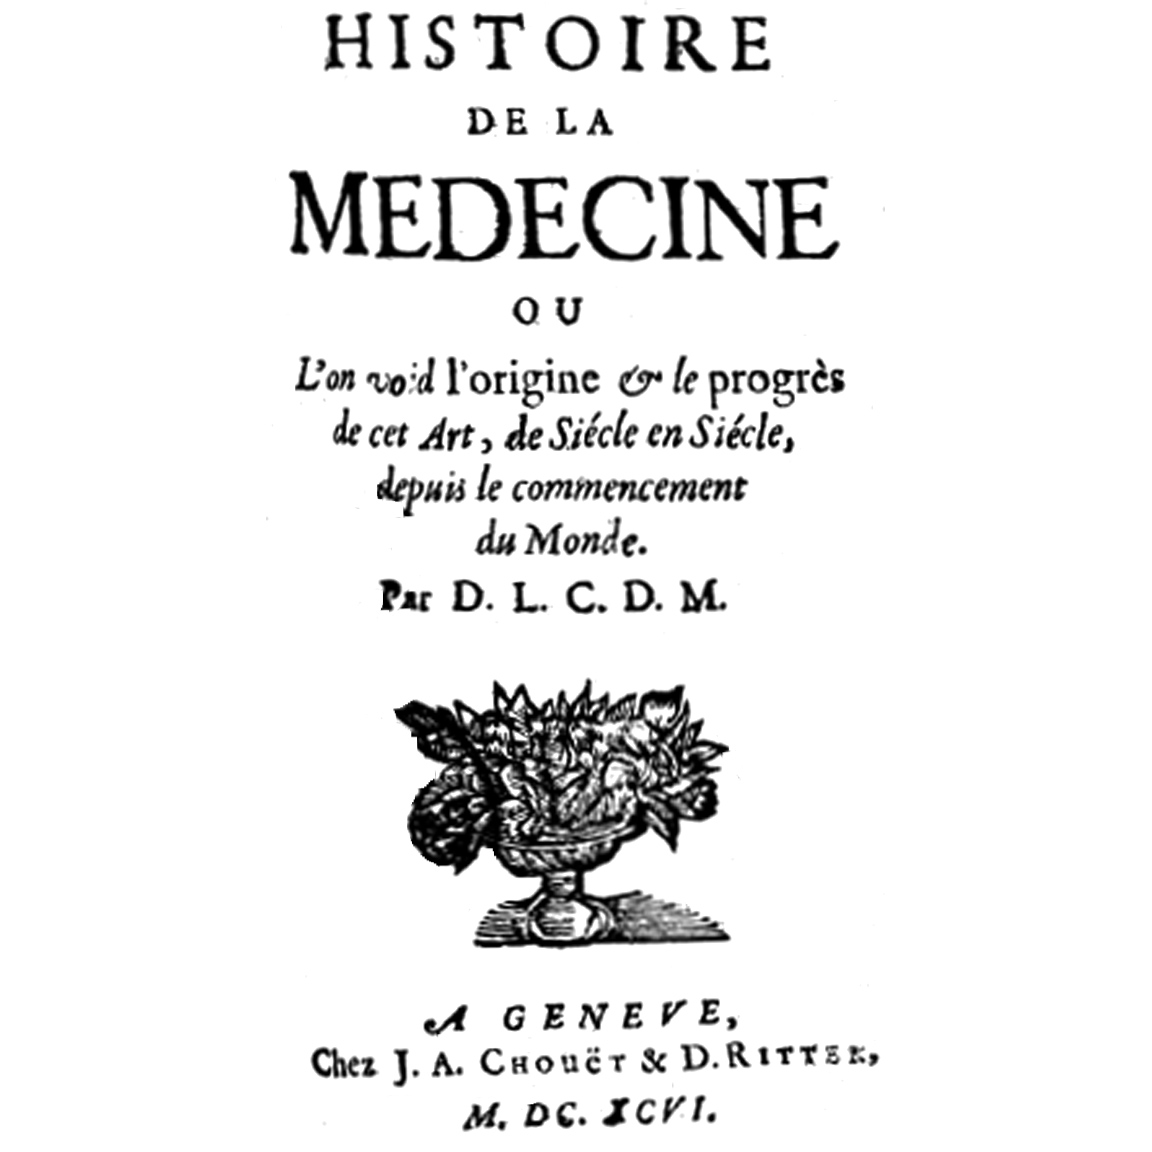 1696-LECLERC-HistoireMédecine-titre